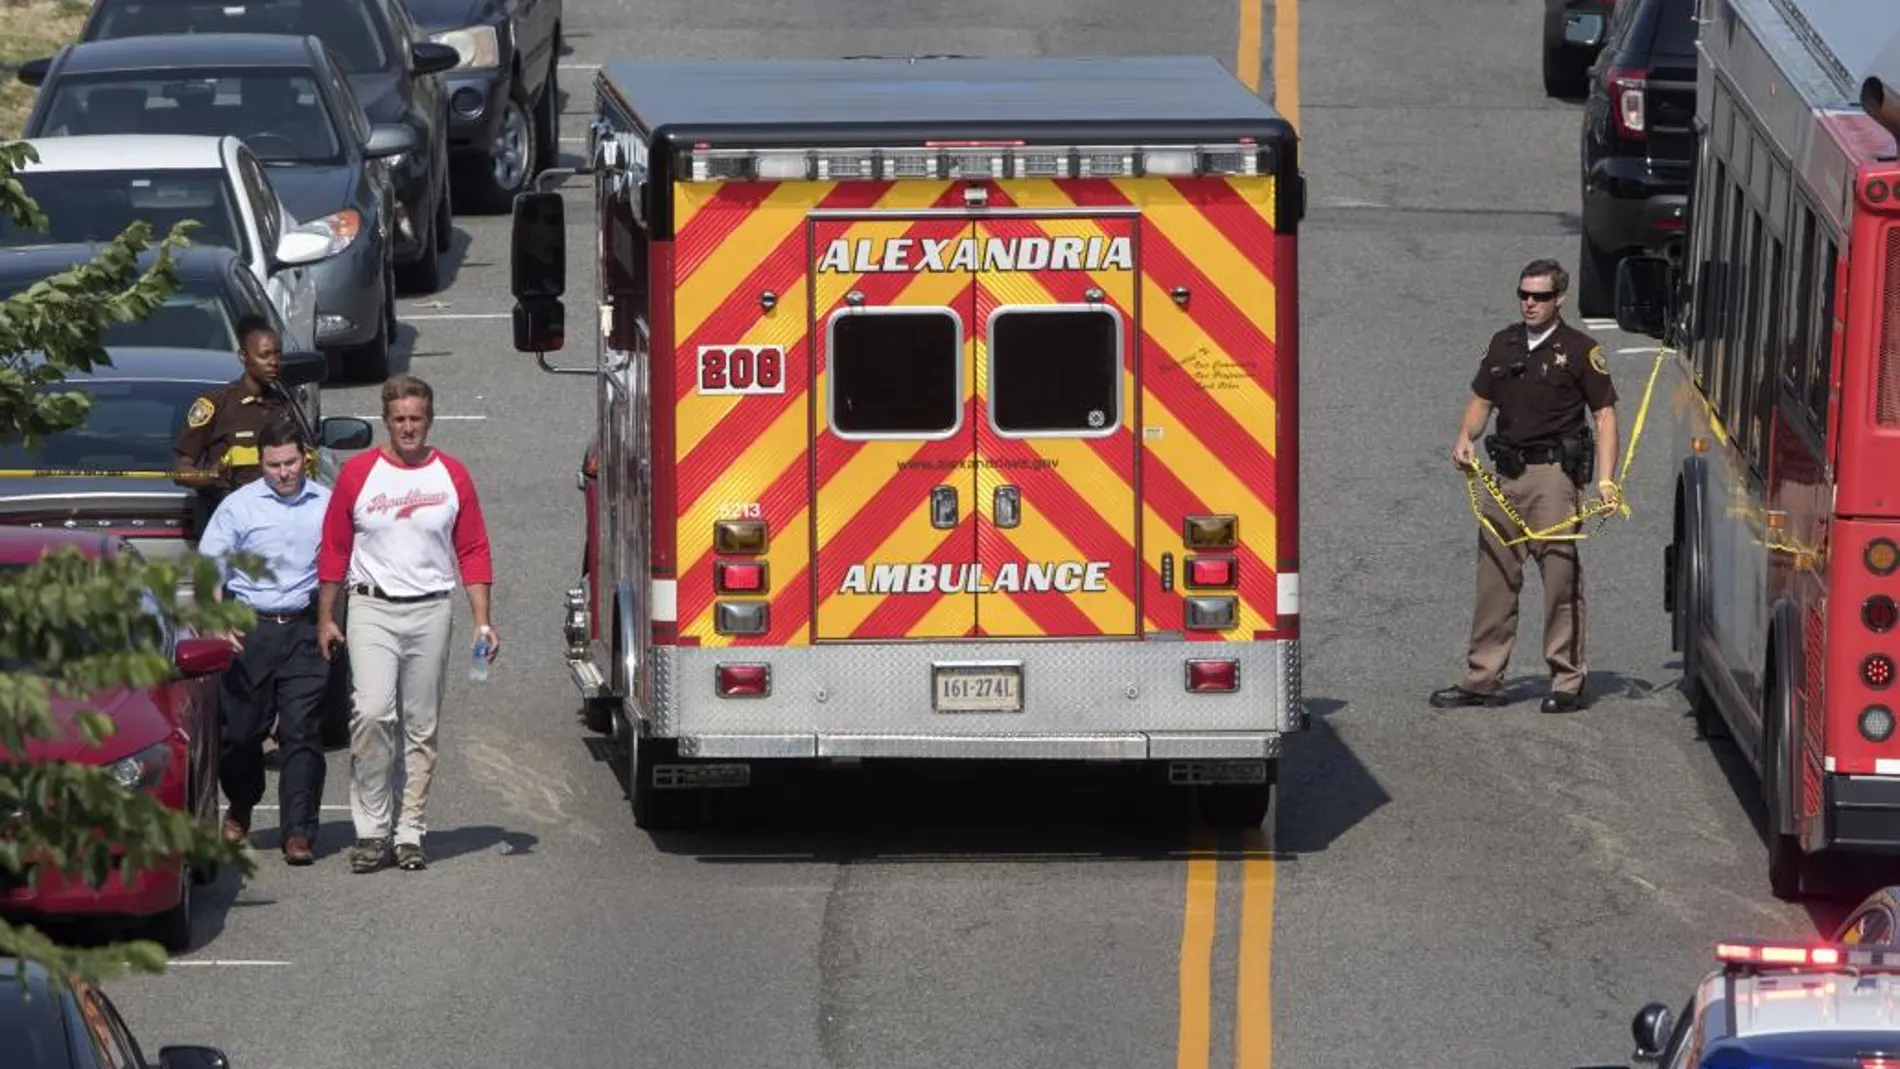 El senador republicano Jeff Flake camina junto a una ambulancia mientras abandona el lugar donde se produjo un tiroteo en Alexandria